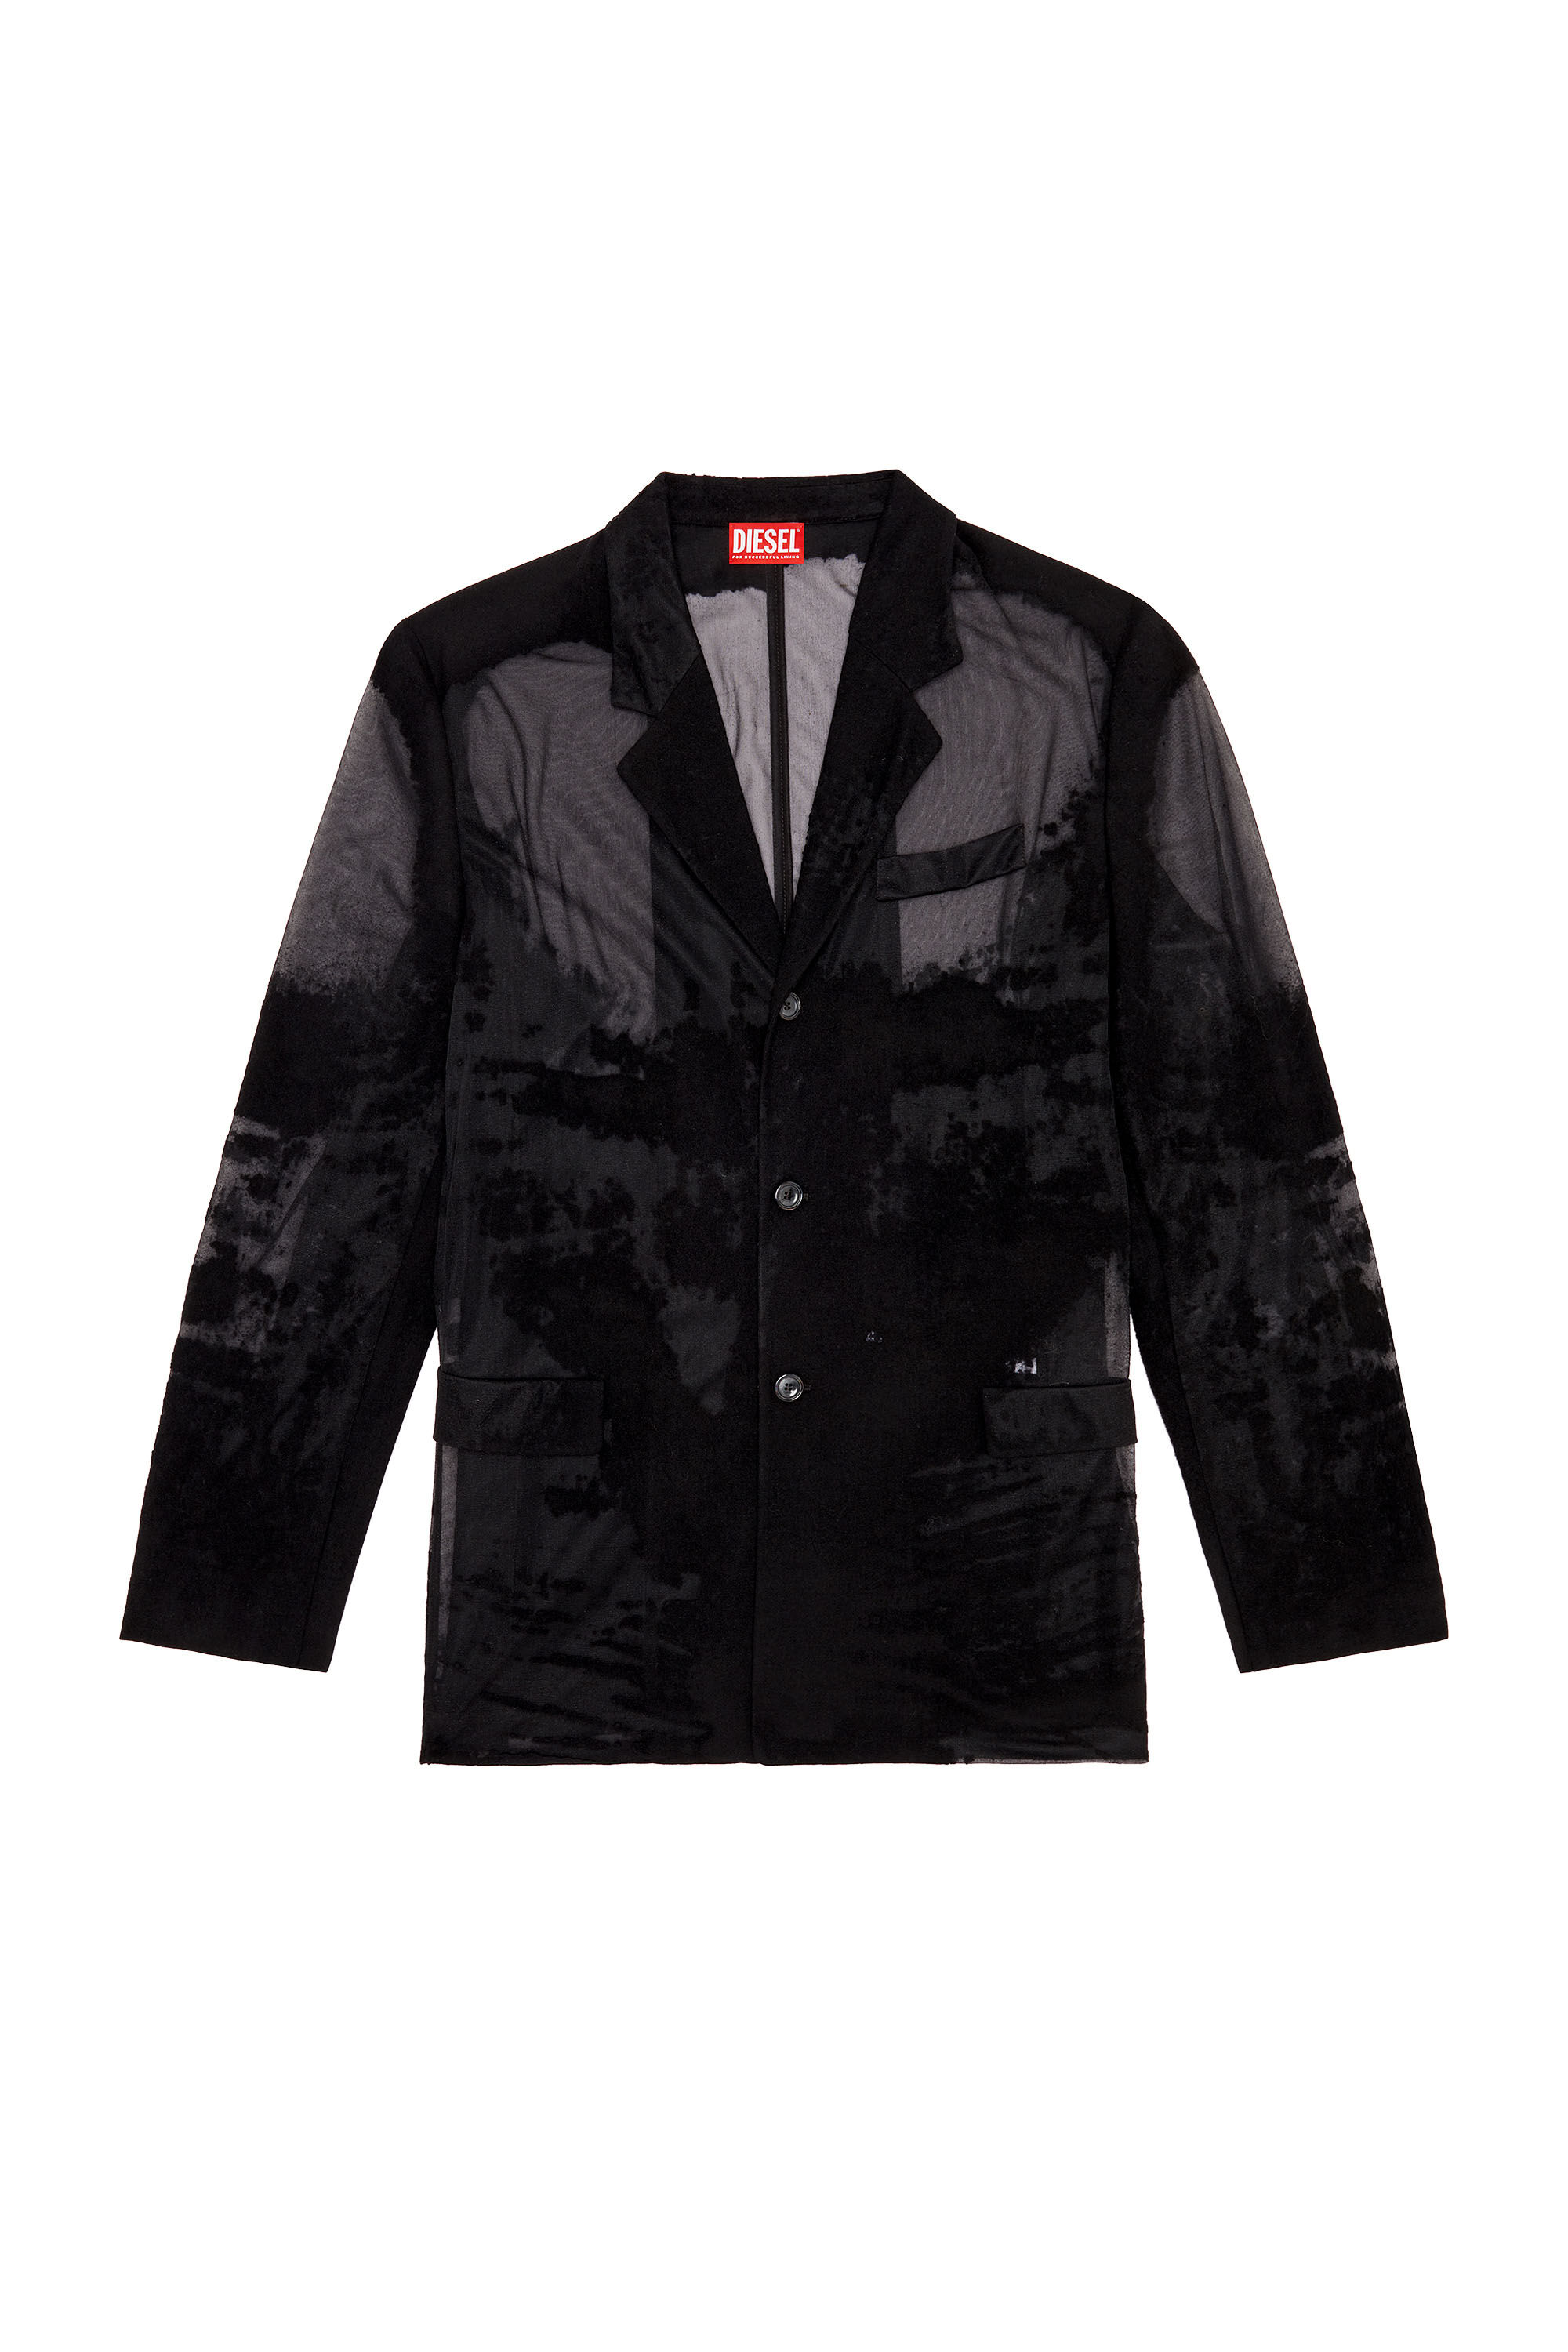 Diesel - J-REG, Male Tailored jacket in devoré cool wool in ブラック - Image 2